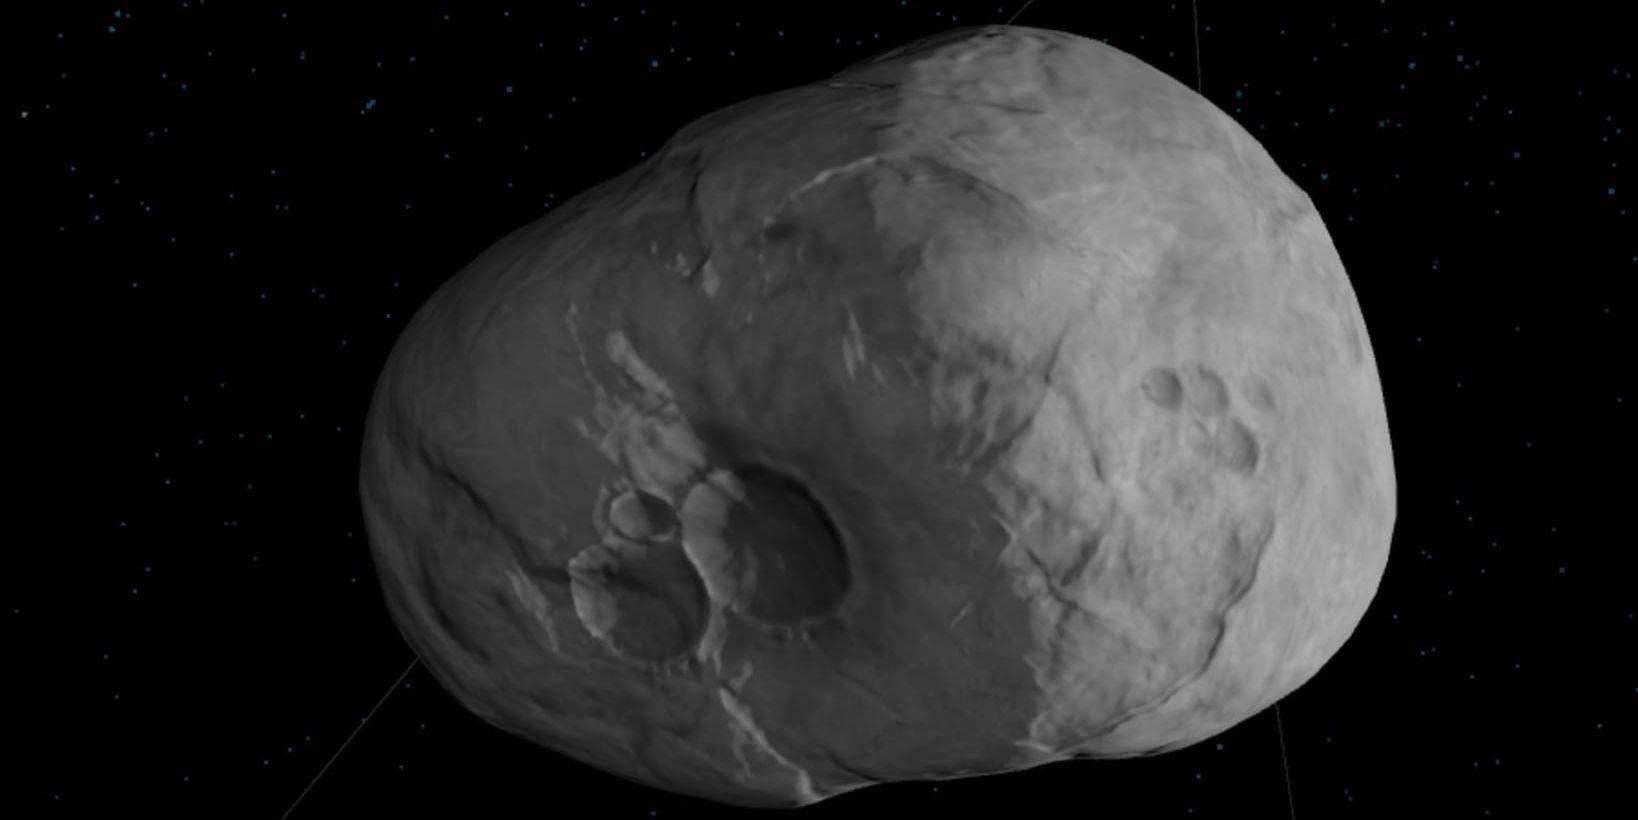 Asteroiden kan träffa jorden, men det är över 99 procents chans att den inte gör det.